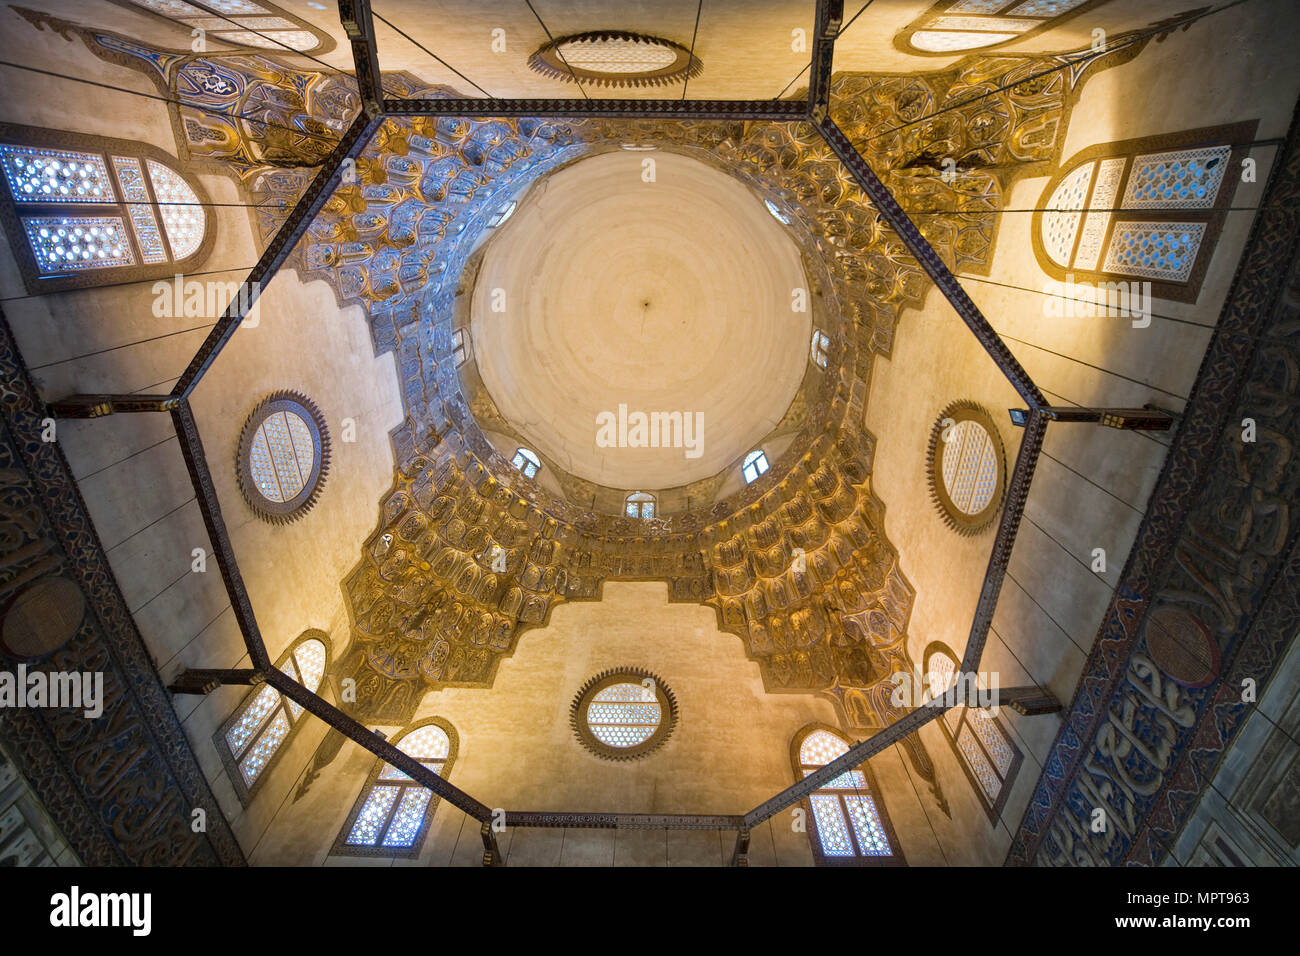 Aegypten, Kairo, Sultan Hassan Moschee Stock Photo